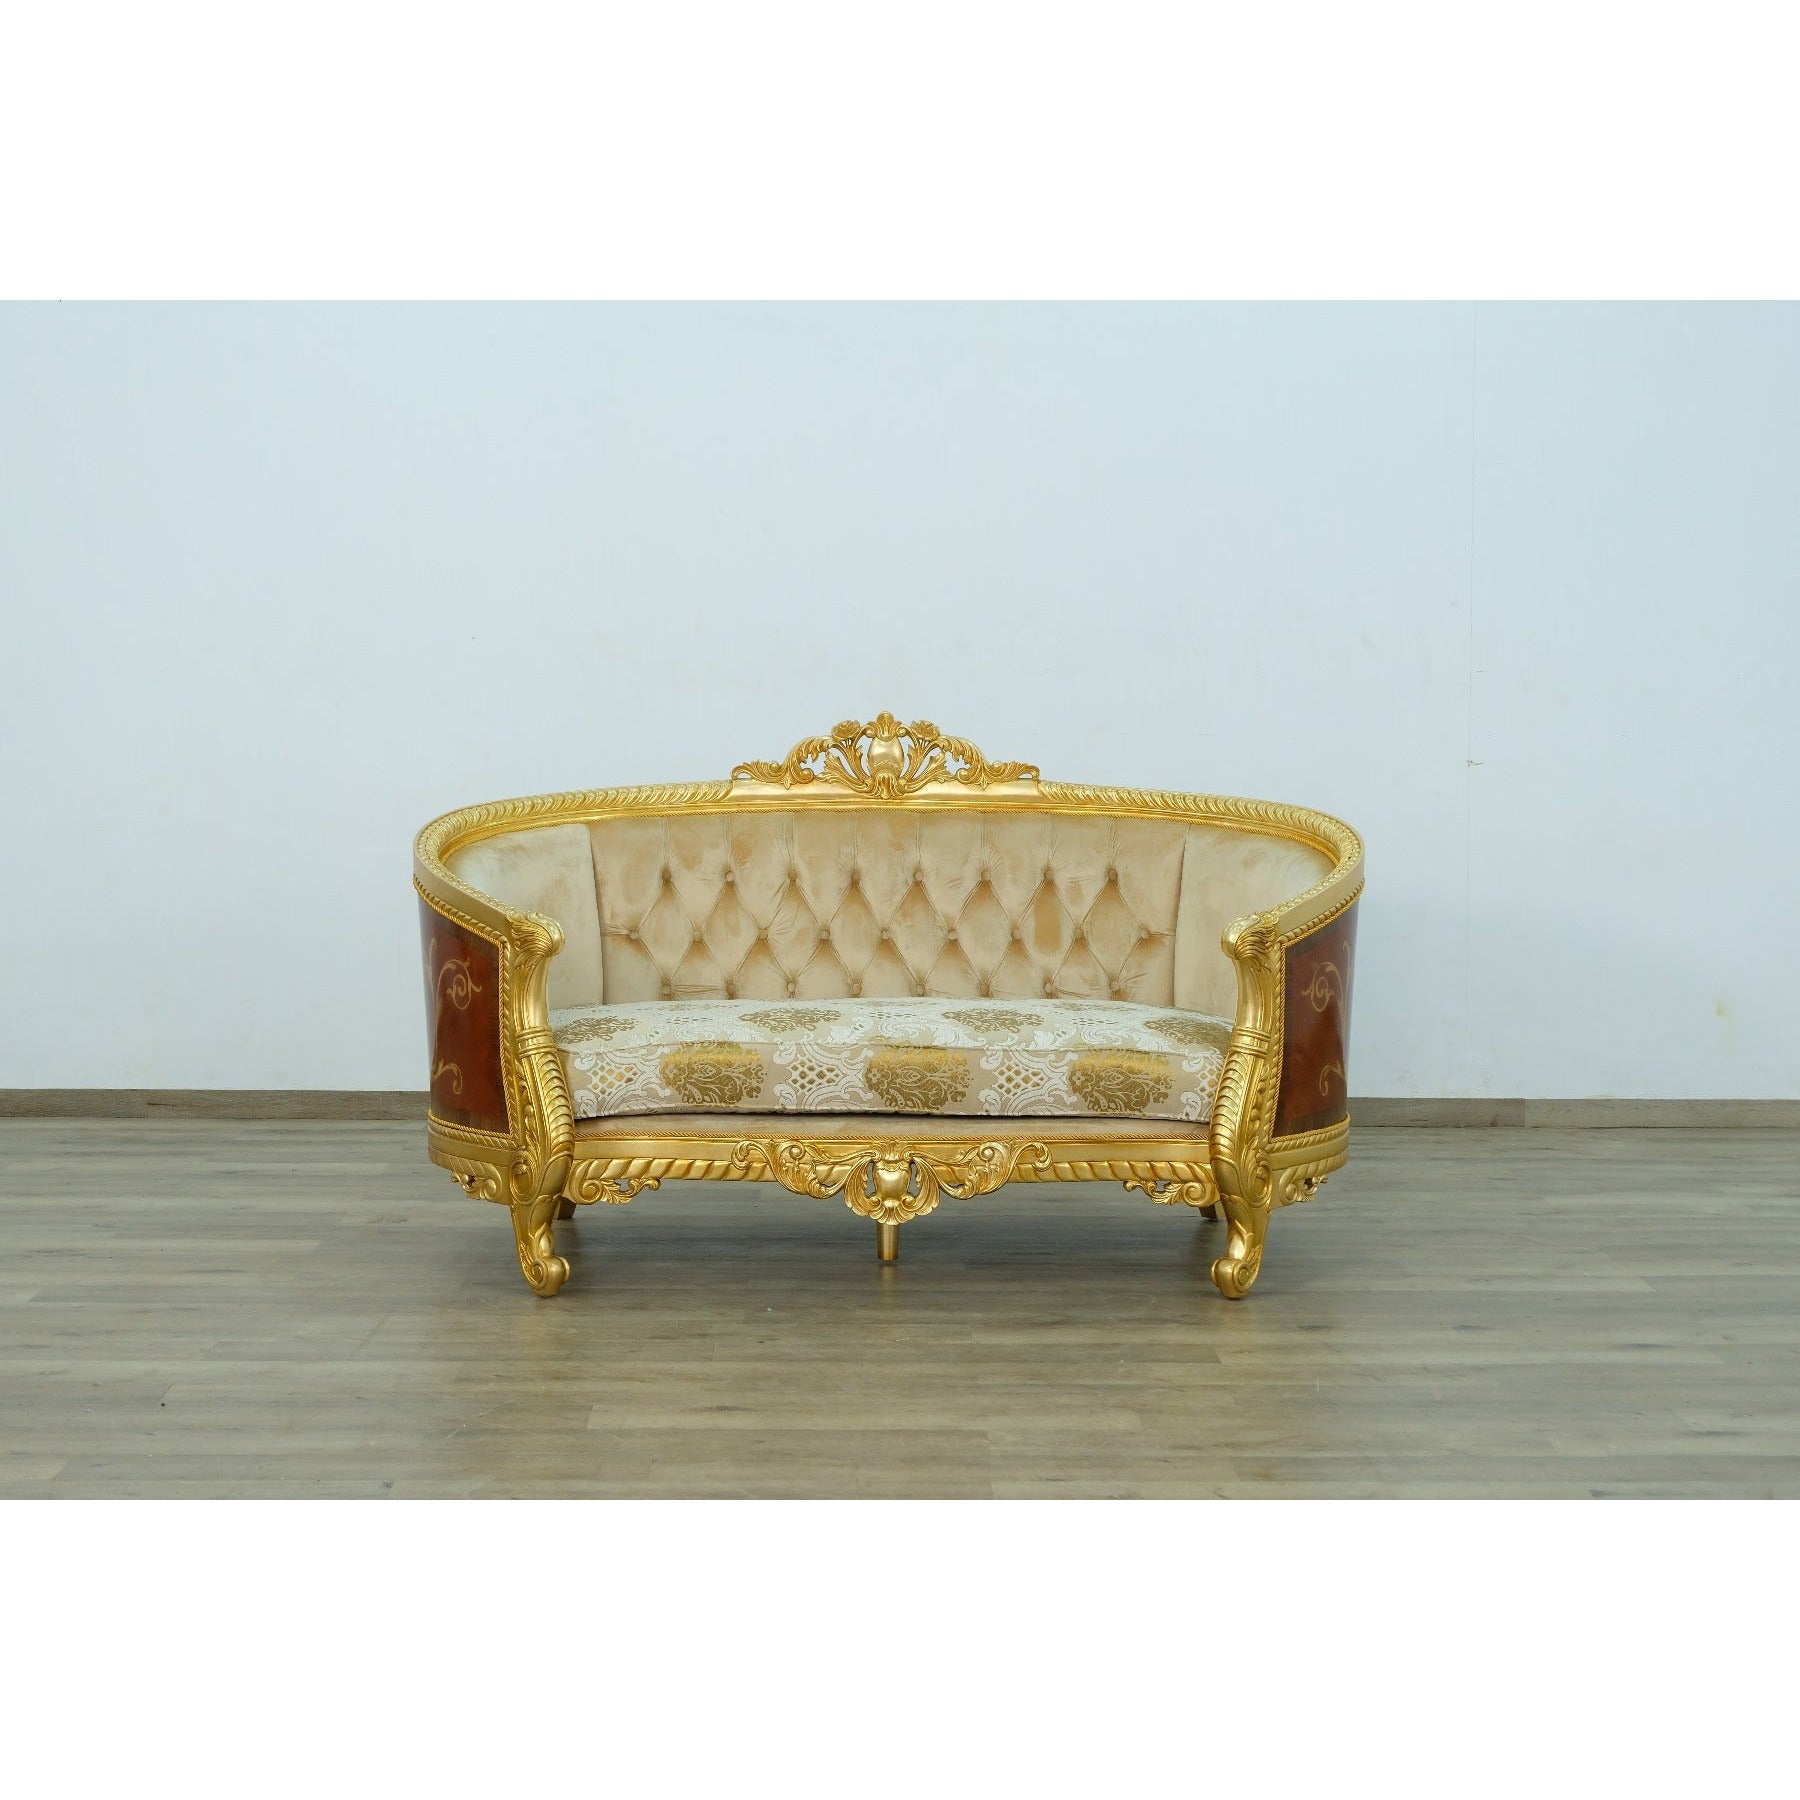 European Furniture - Luxor 3 Piece Living Room Set in Gold Leaf - 68584-3SET - New Star Living